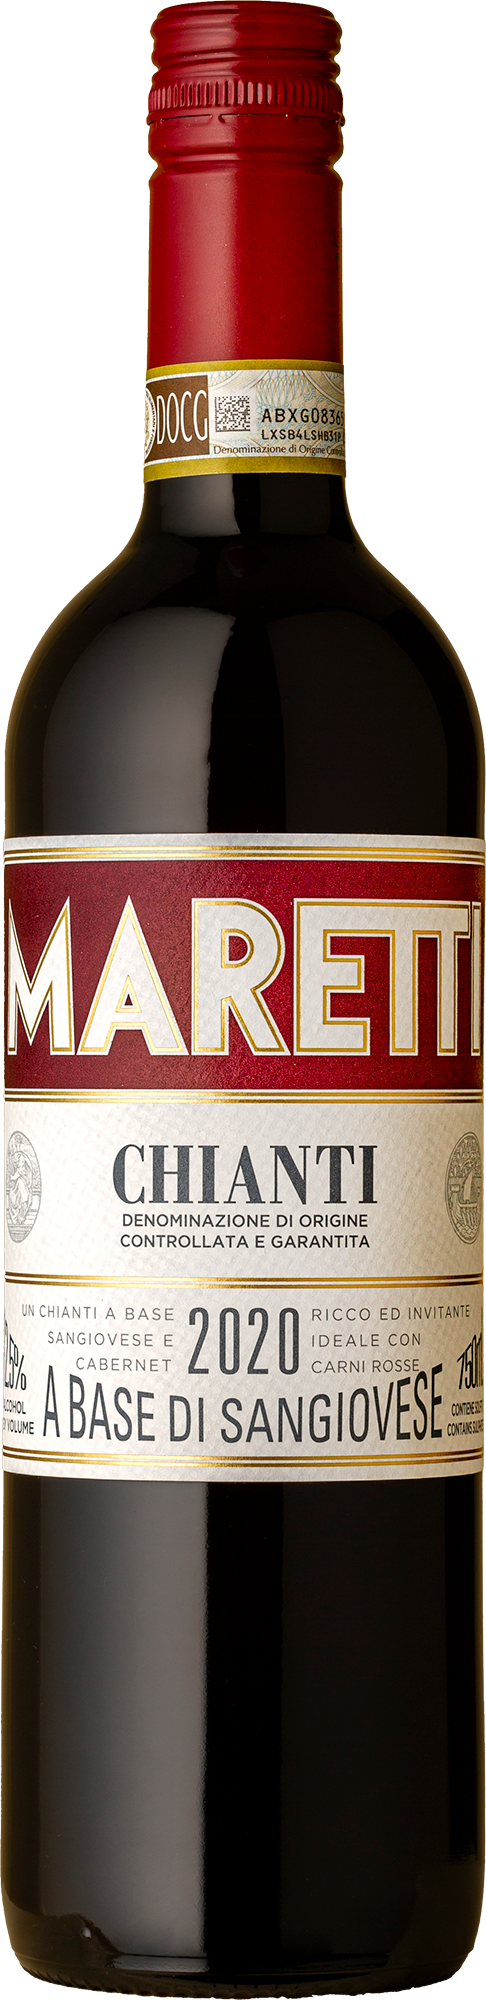 Maretti - Chianti Sangiovese 2020 Red Wine